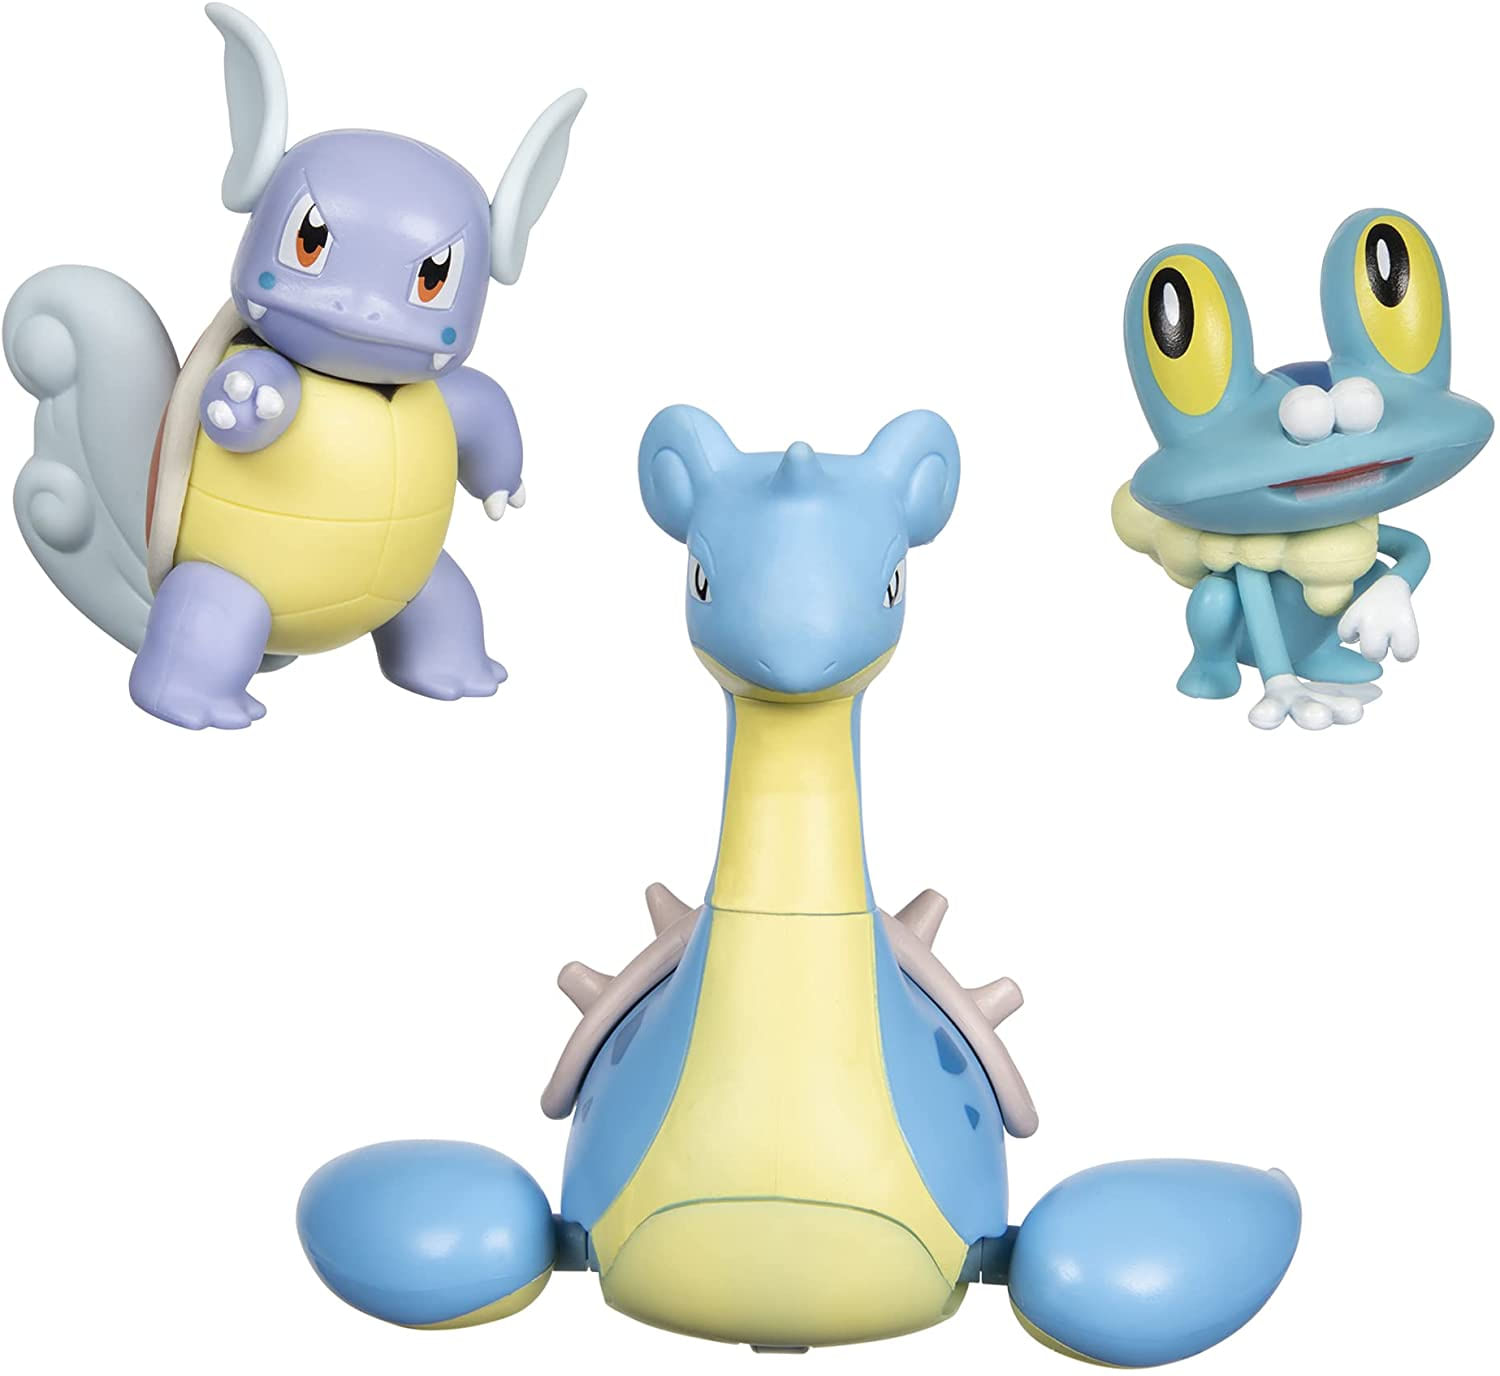 Pokemon Battle Figure, Water-type Theme 3 Pack Com Froakie, Wartortle, Lapras - 4,5 Polegadas Froakie Figure, 3 Polegadas Wartortle Figure, 2-inch Fr